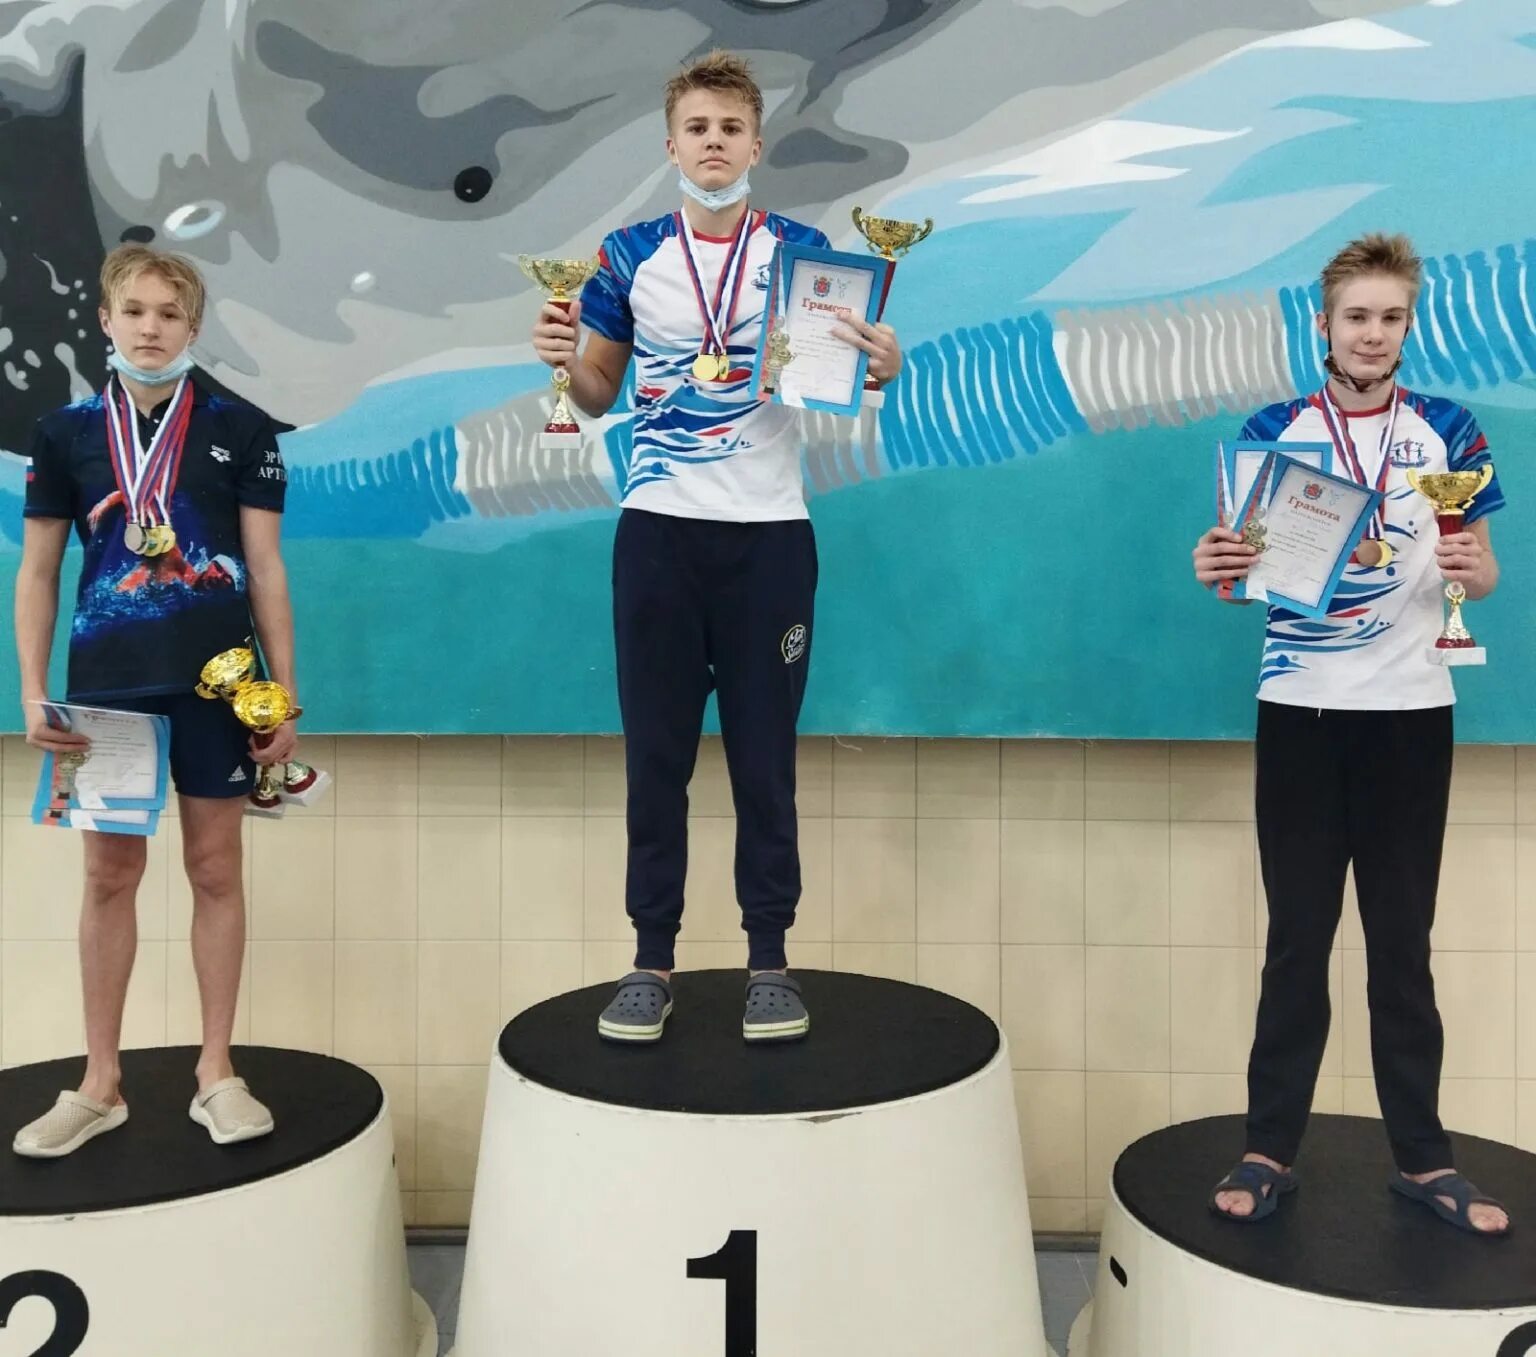 Сшор 3 калининский. Первое место по плаванию. Чемпионат по плаванию юноши 16 лет. ГБУ СШОР 3 Калининского района.